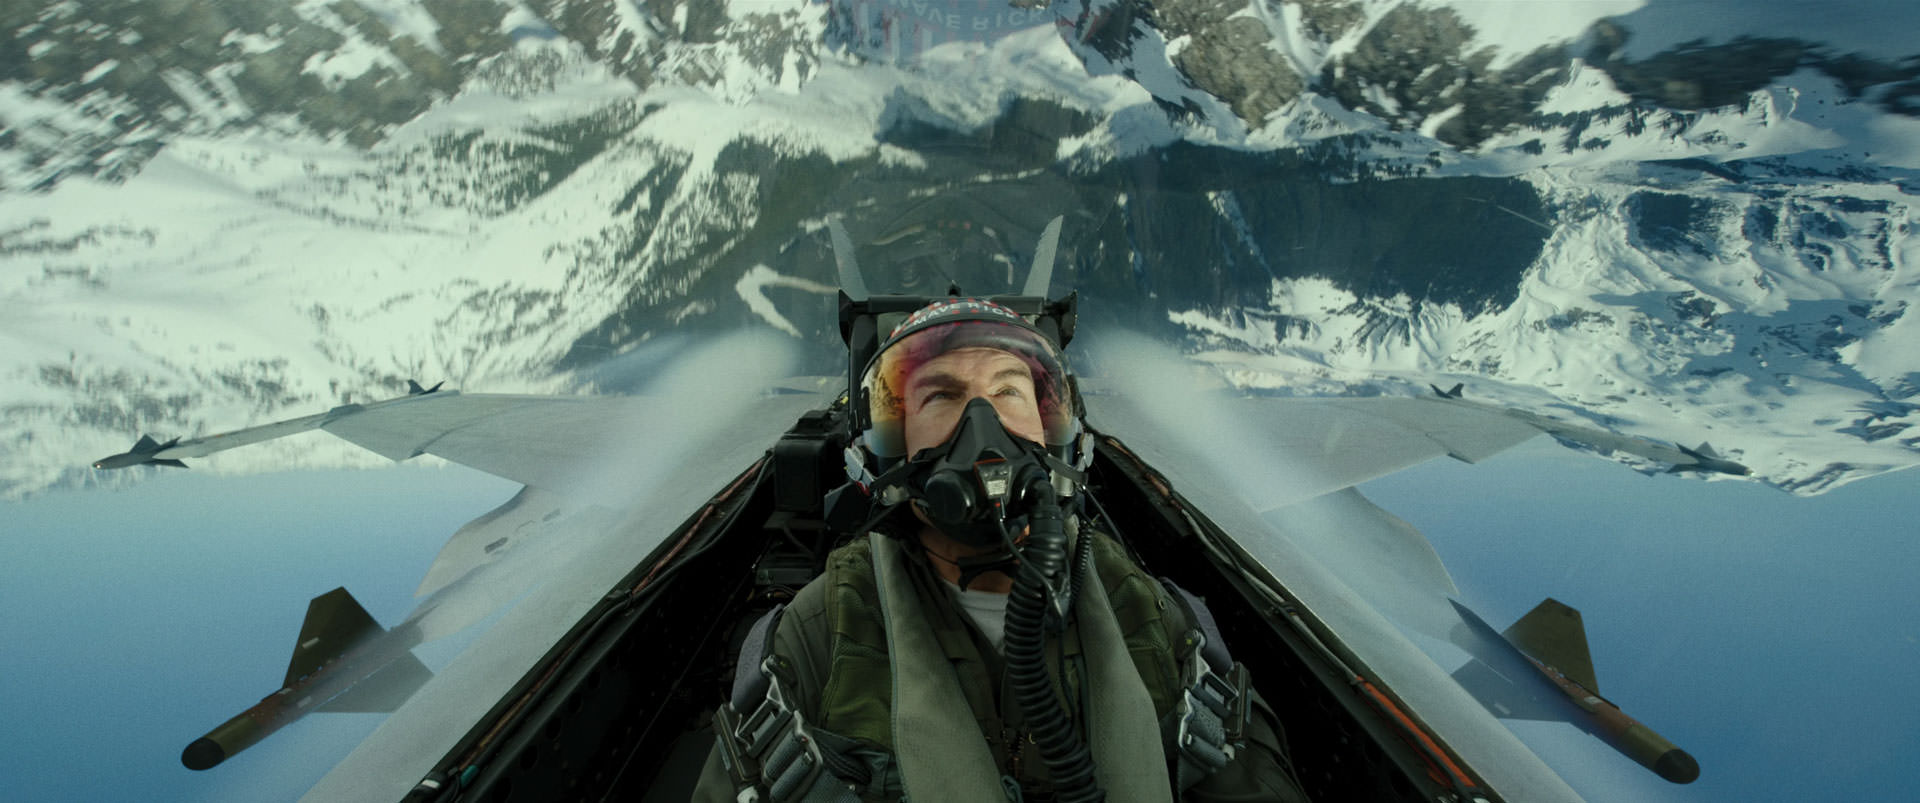 تام کروز در حال پرواز معکوس داخل جنگنده‌ی اف ۱۸ در نمایی از فیلم تاپ گان ماوریک